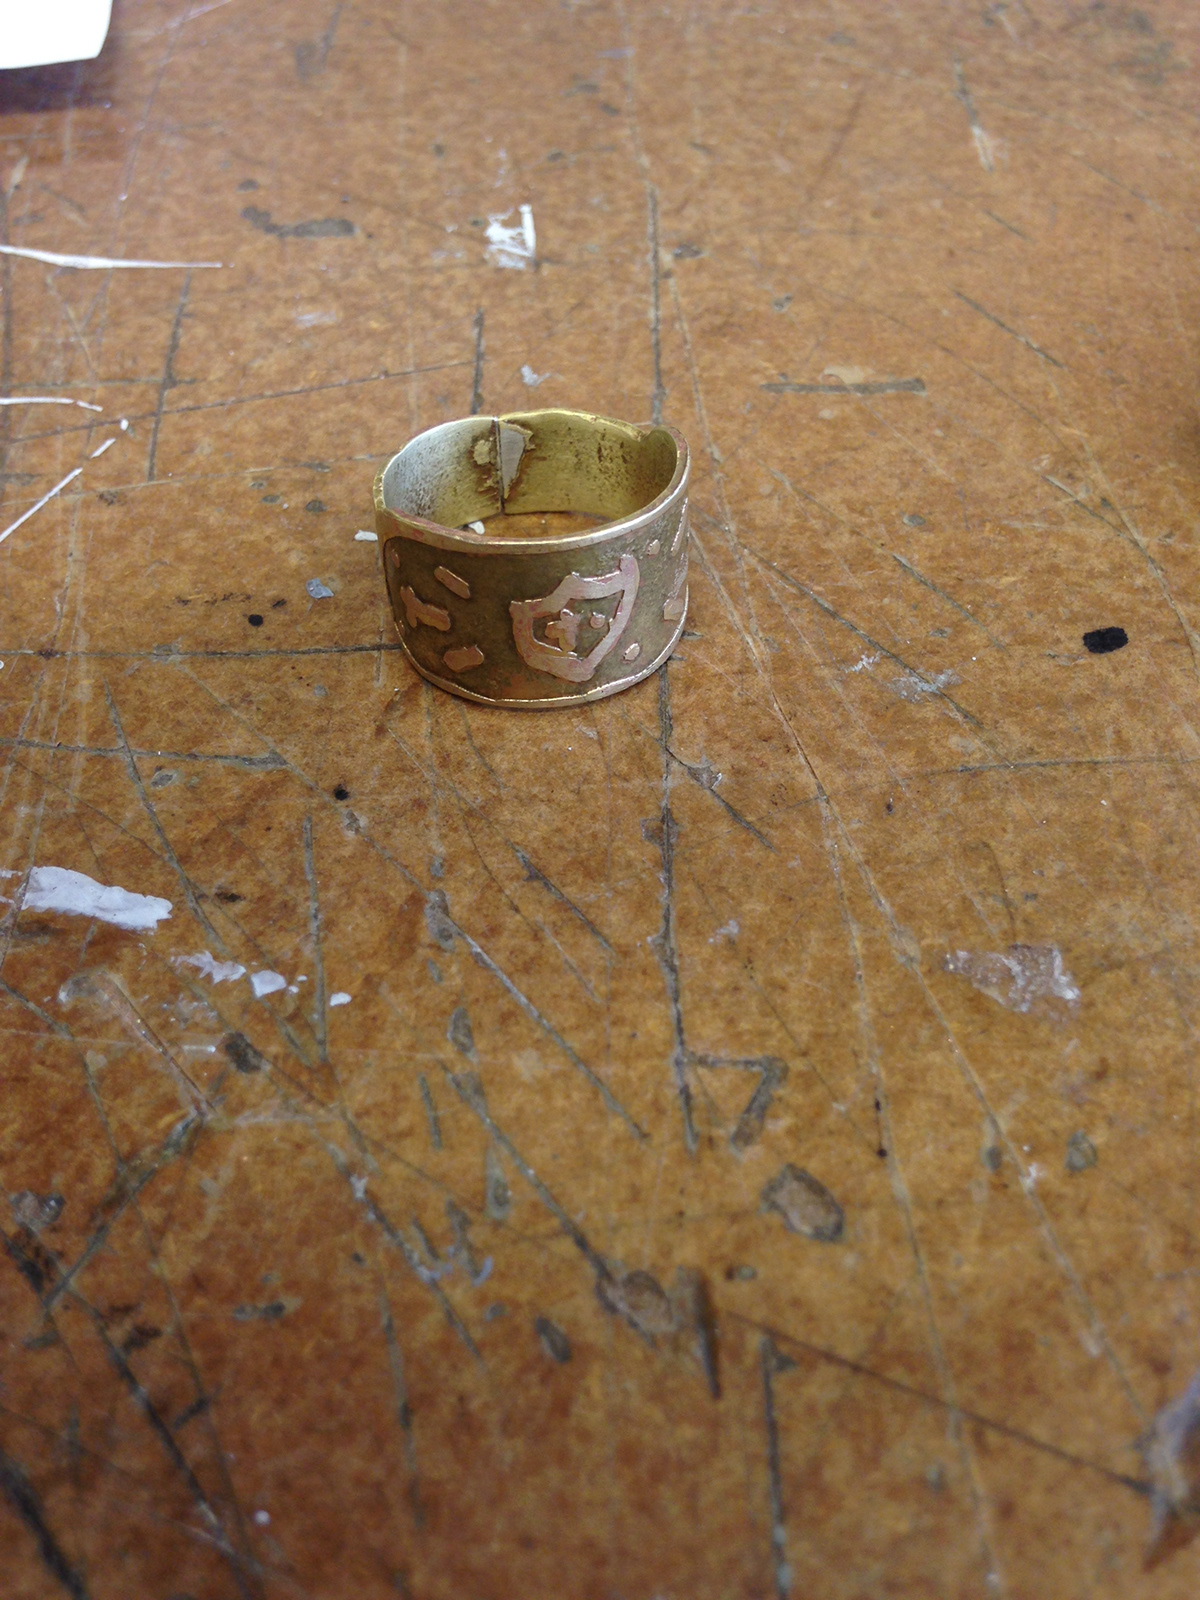 Metal working metals jewelry rings pendant brooch